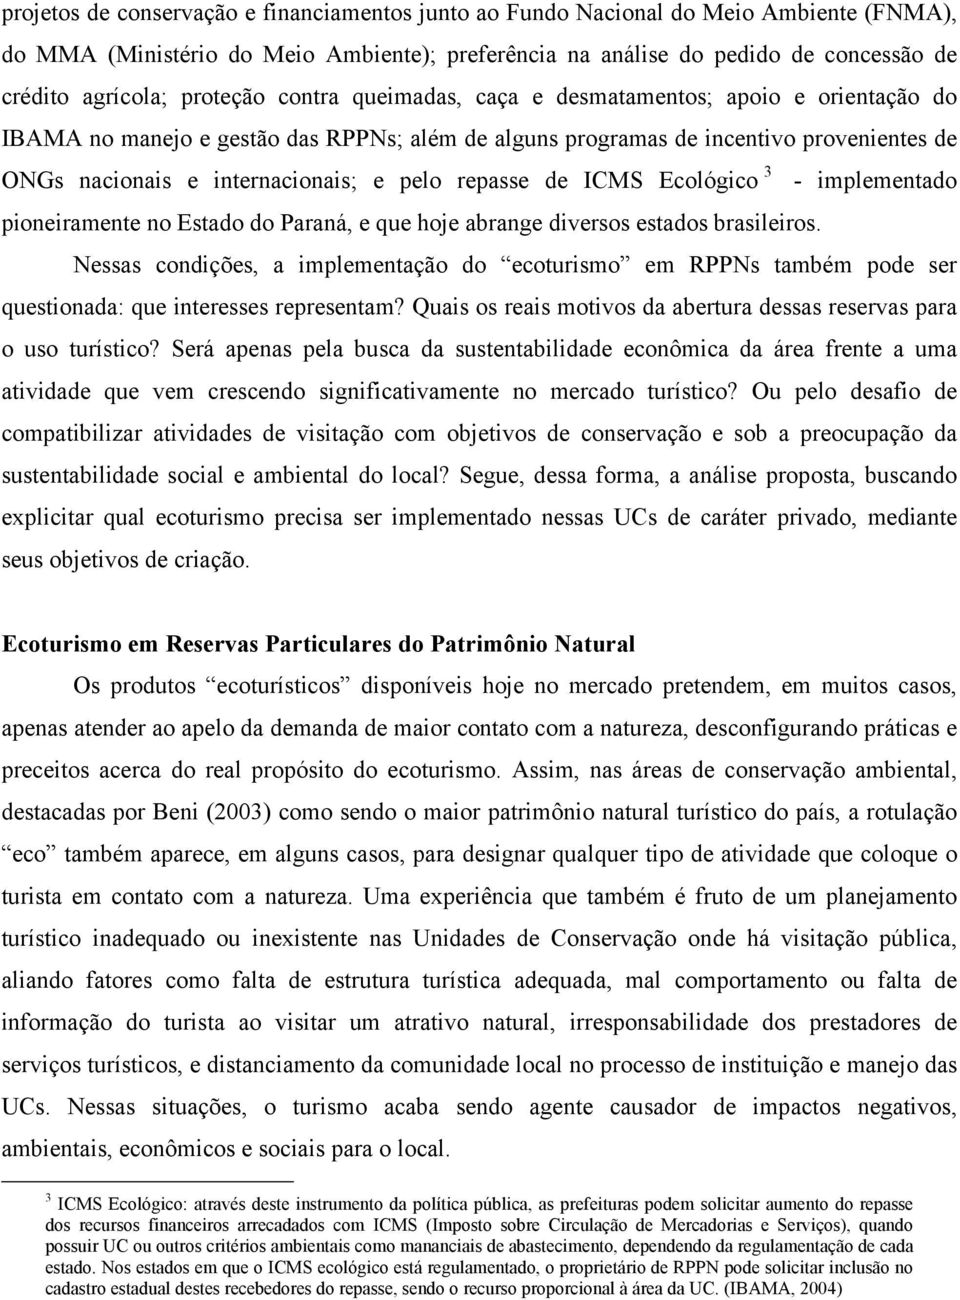 pelo repasse de ICMS Ecológico 3 - implementado pioneiramente no Estado do Paraná, e que hoje abrange diversos estados brasileiros.